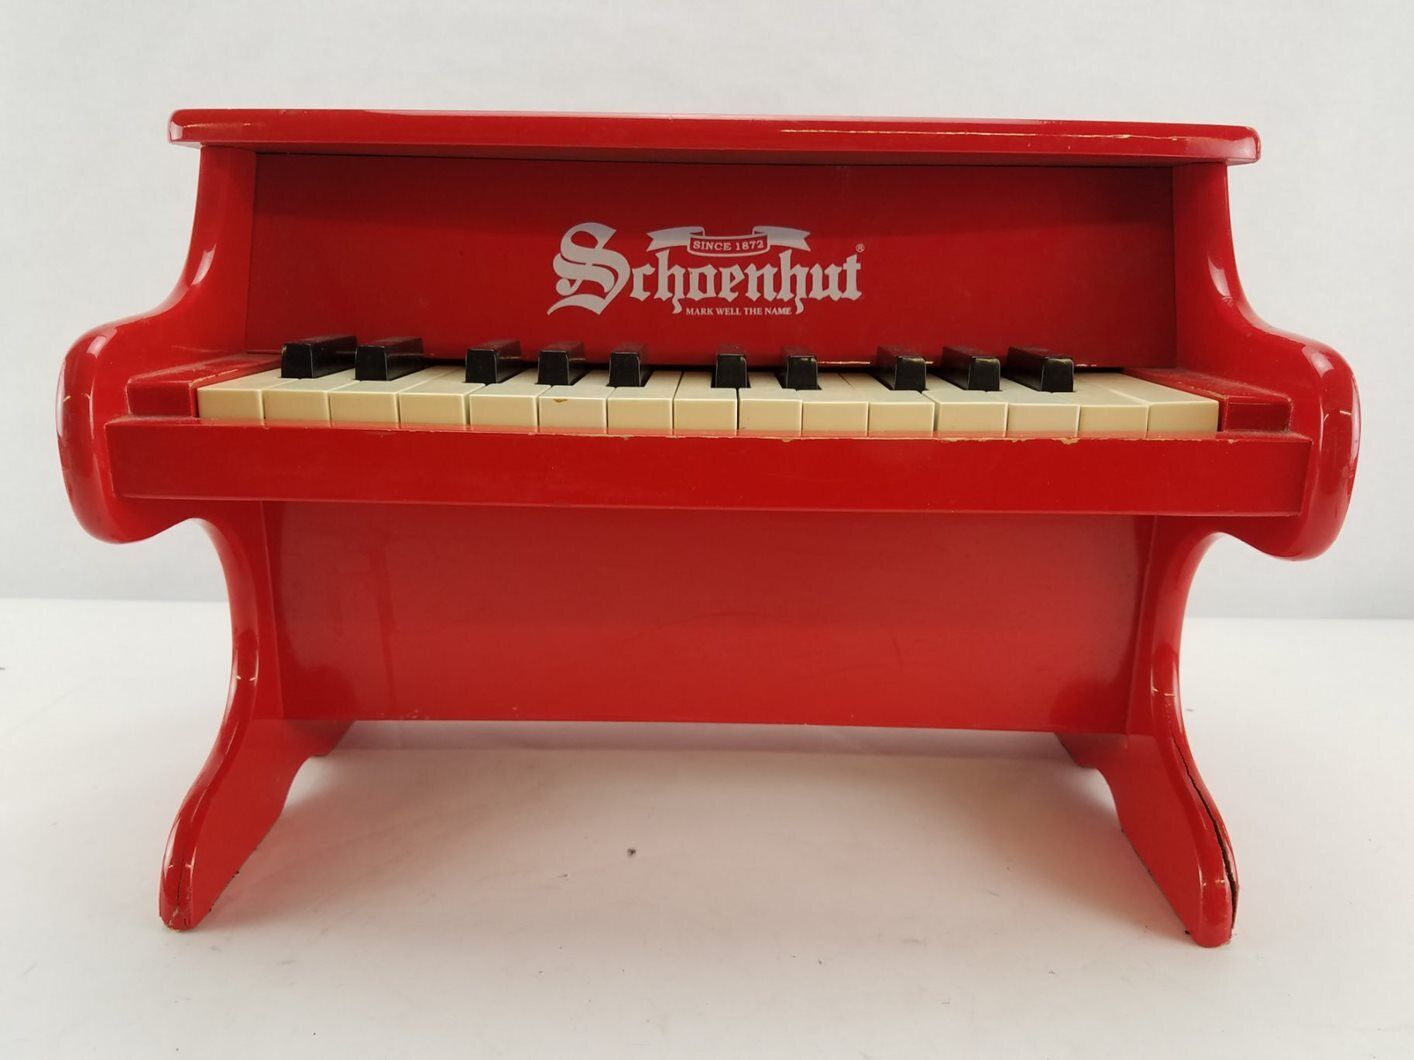 Schoenhut 25 Keys Red Mini Keyboard Piano - Need Repairs